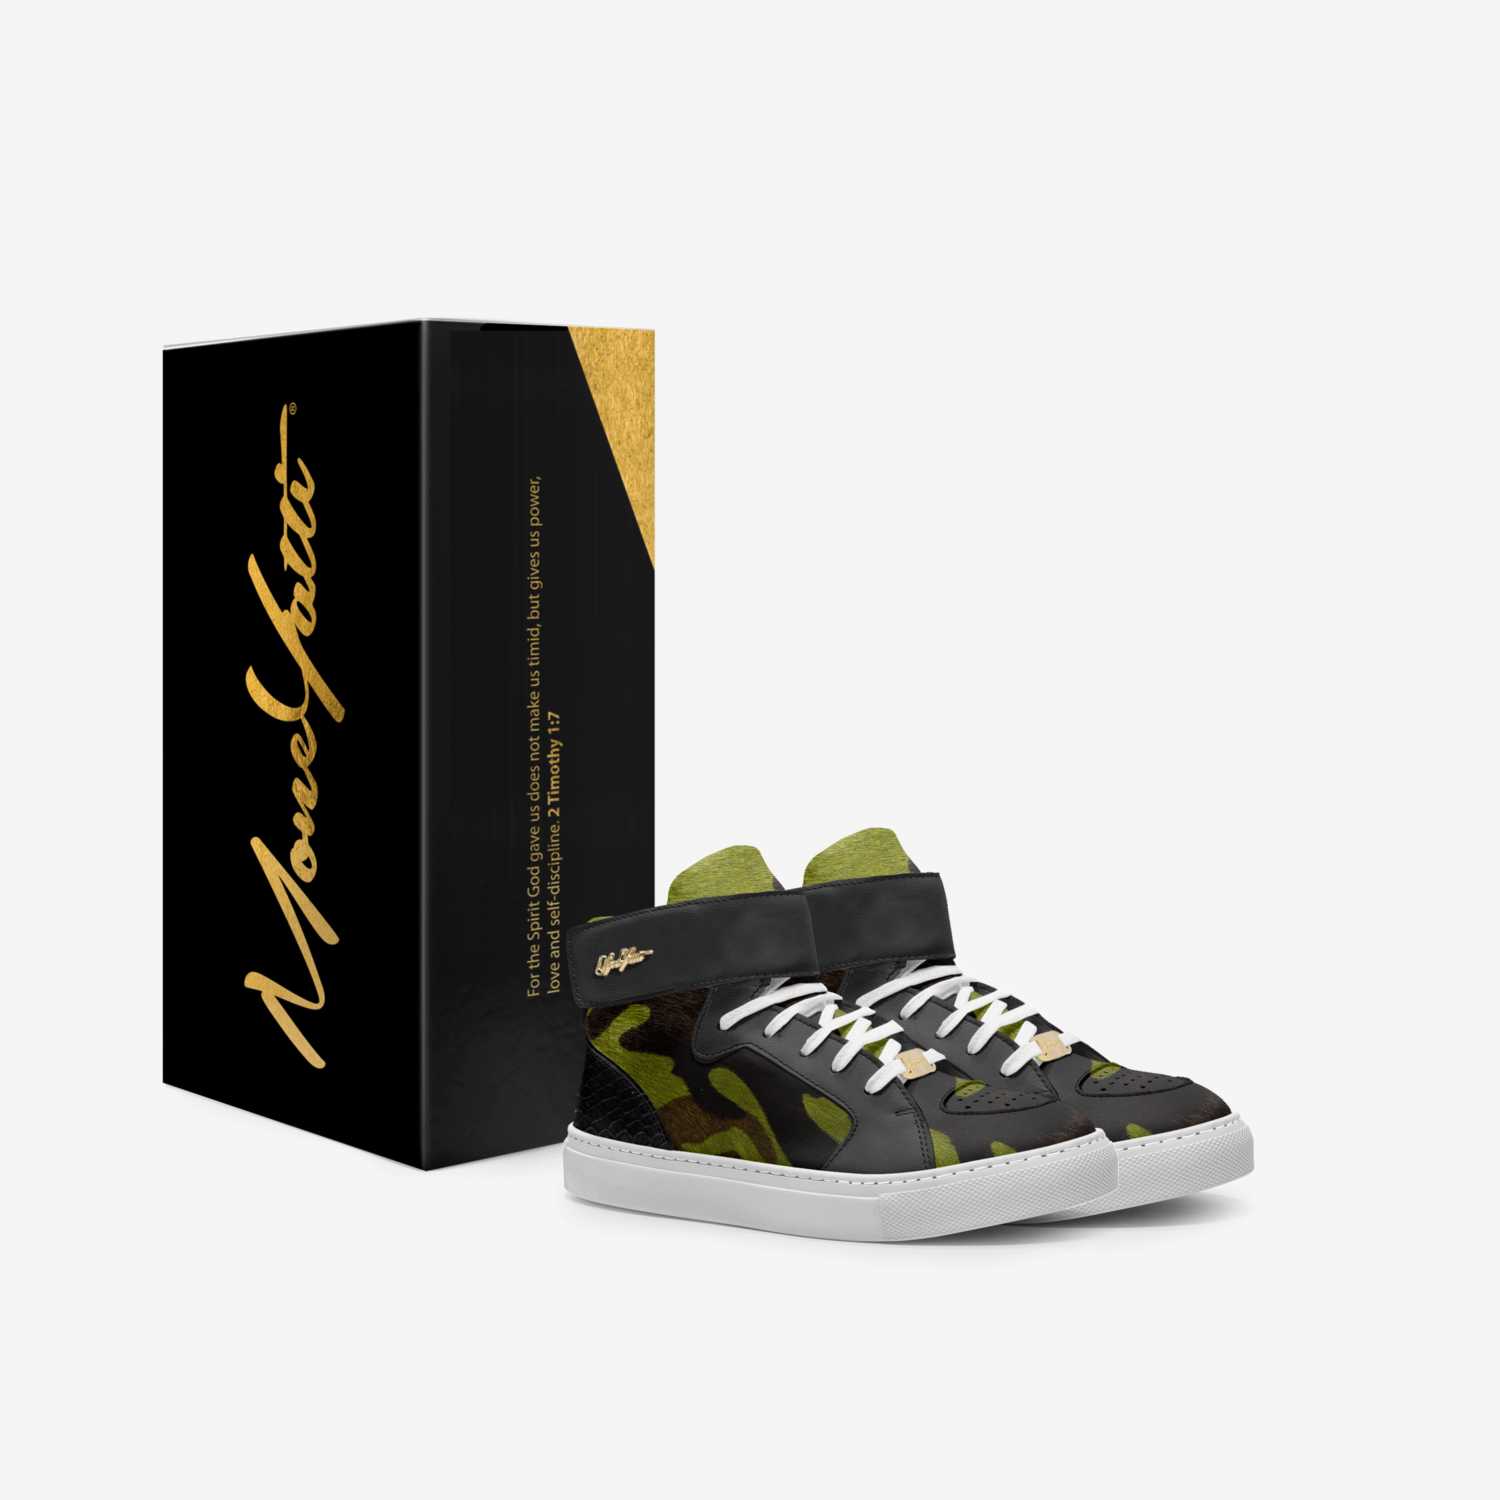 Moneyatti KidH05 custom made in Italy shoes by Moneyatti Brand | Box view